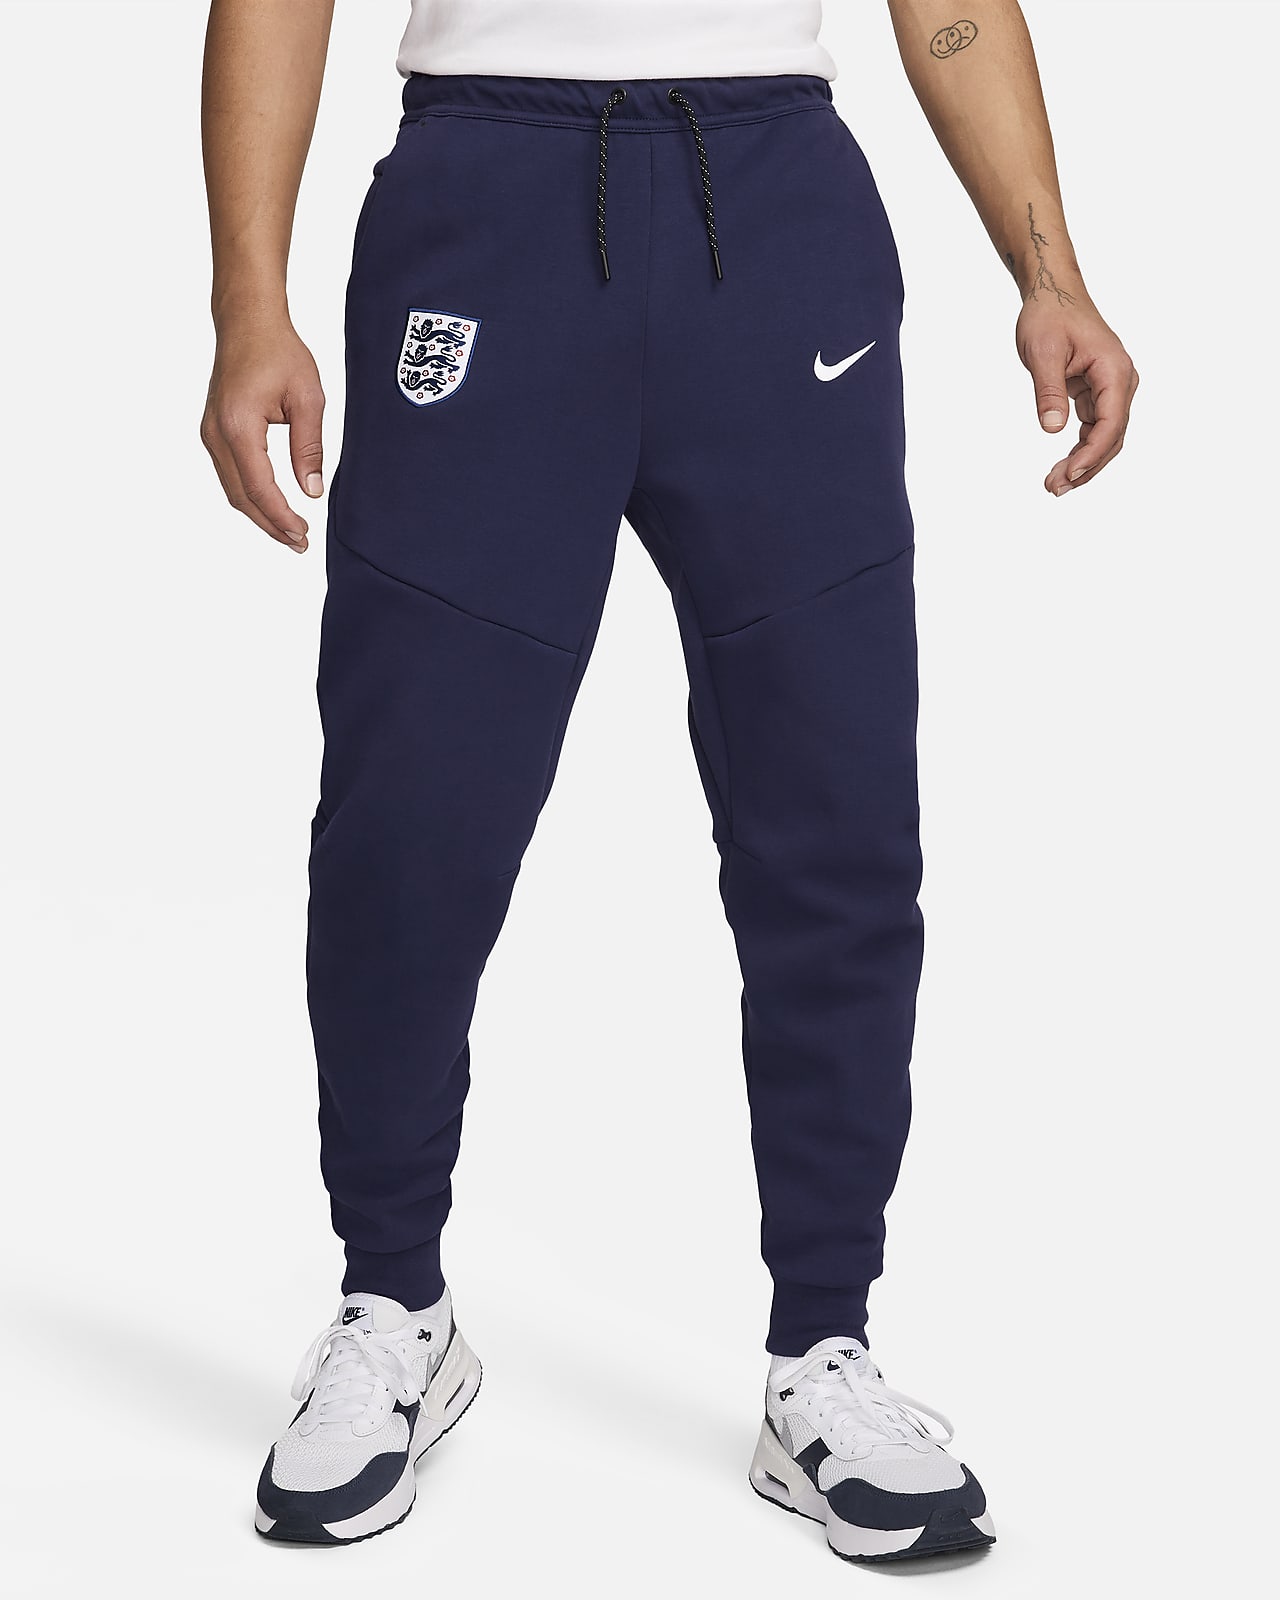 Engeland Tech Fleece Nike voetbalbroek voor heren